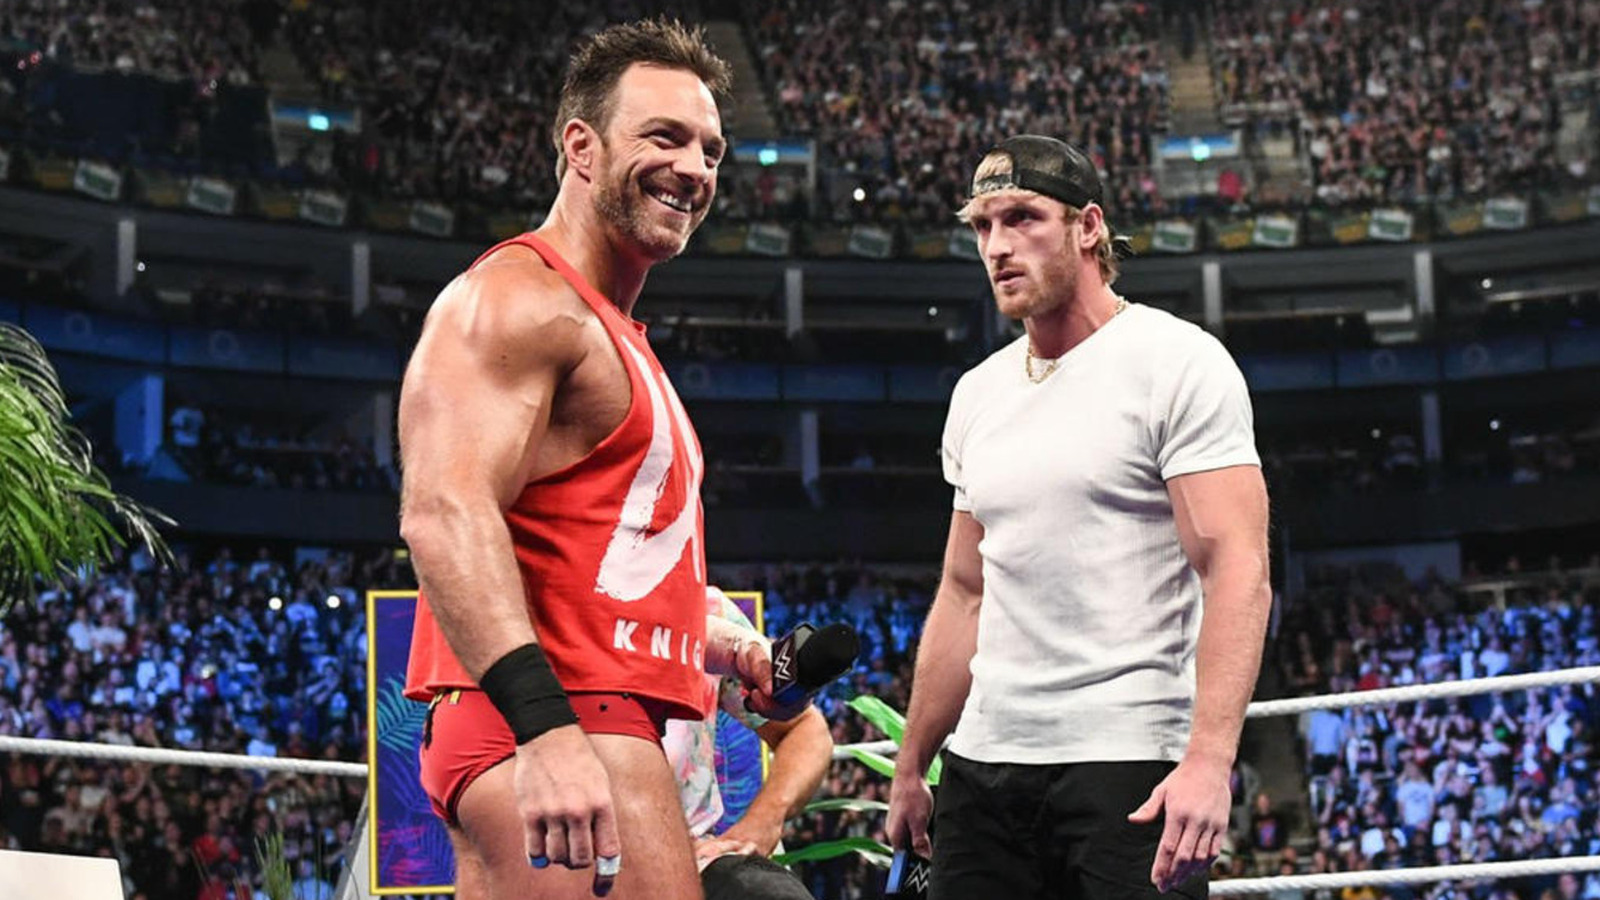 La estrella de la WWE LA Knight se burla de la confrontación con Logan Paul después de que haya terminado con The Miz